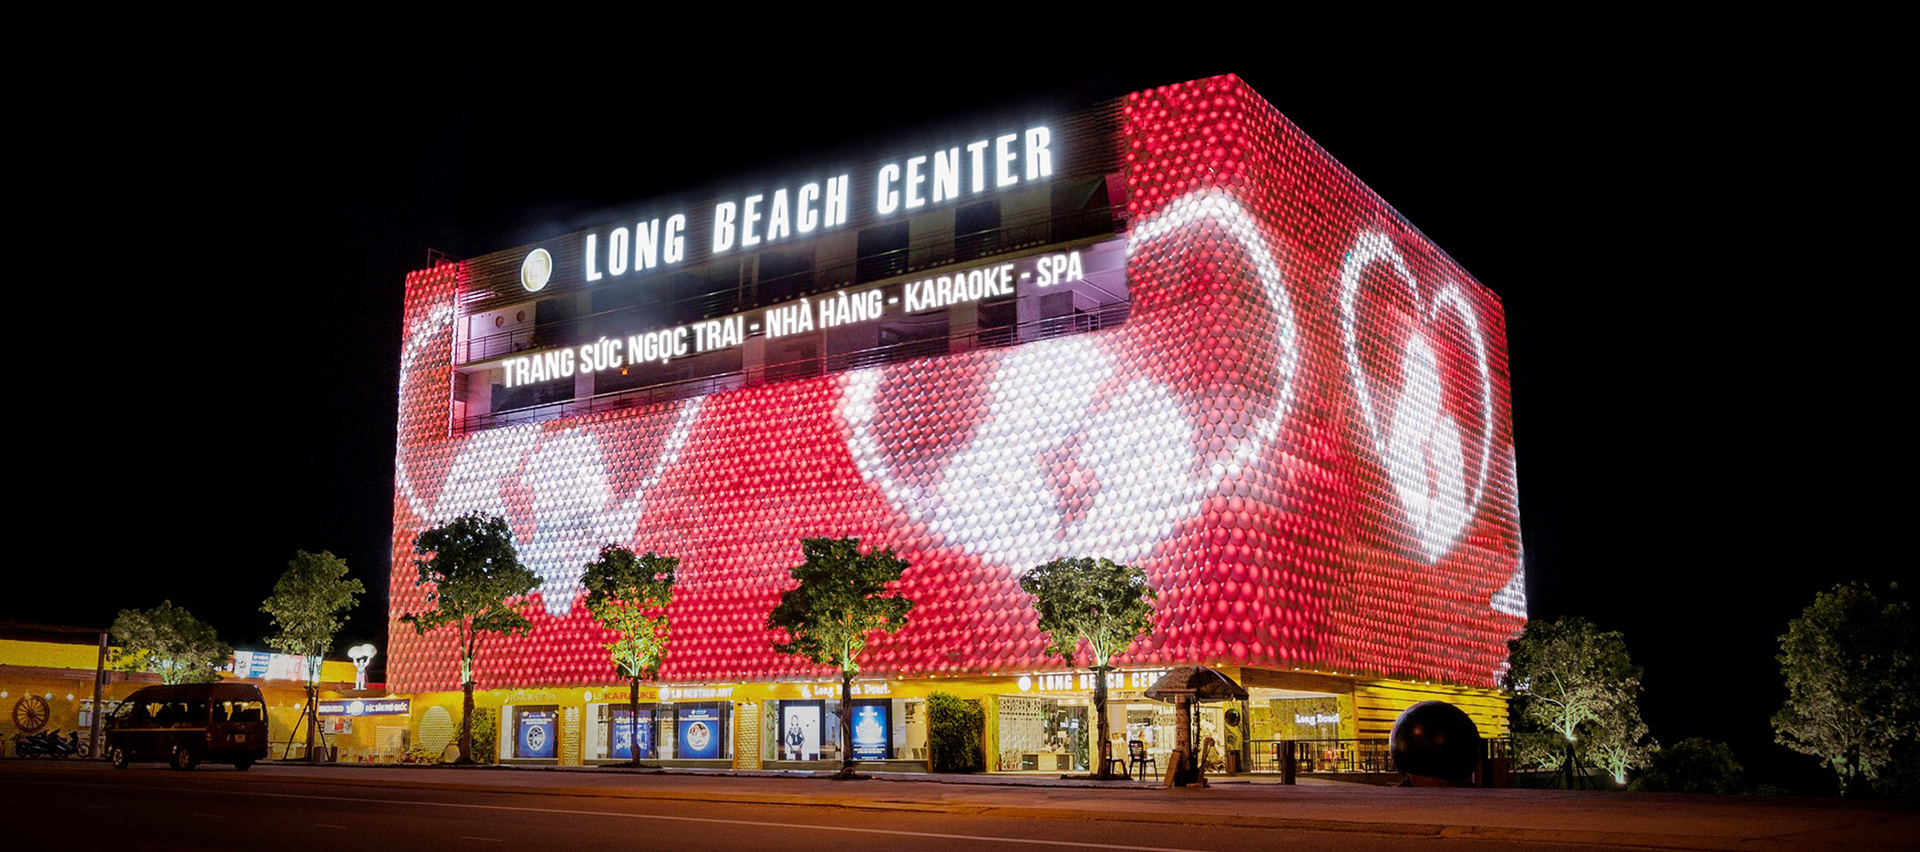 Long Beach Center nằm trên đường Trần Hưng Đạo Phú Quốc